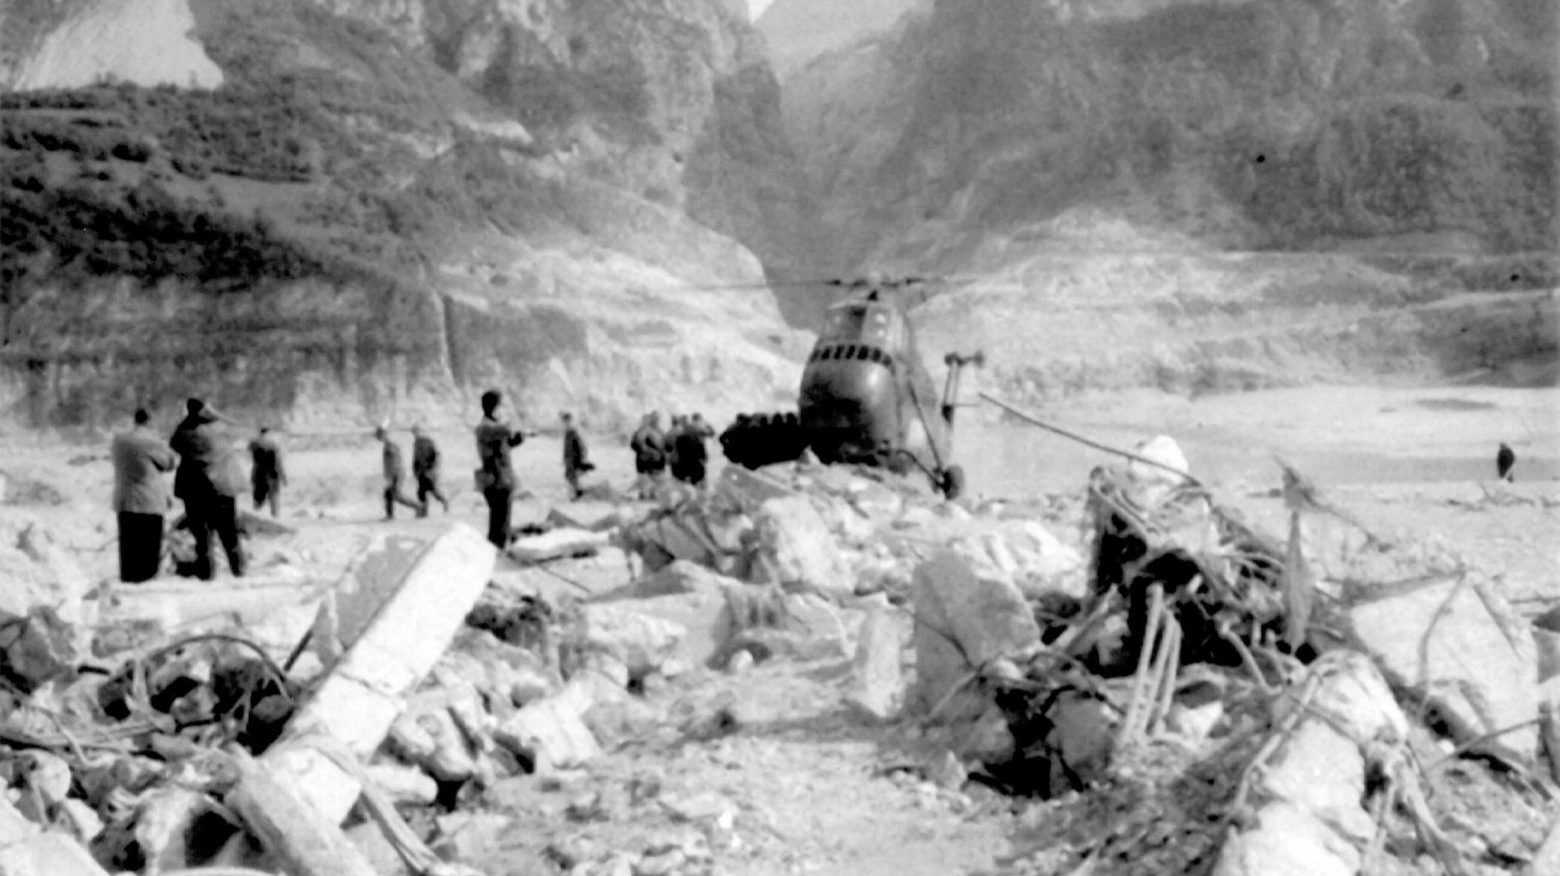 Immagine della tragedia del Vajont del 9 ottobre 1963 e un pezzo di montagna si staccò precipitando in una diga: un'onda gigantesca invase diversi paesi uccidendo 1910 persone